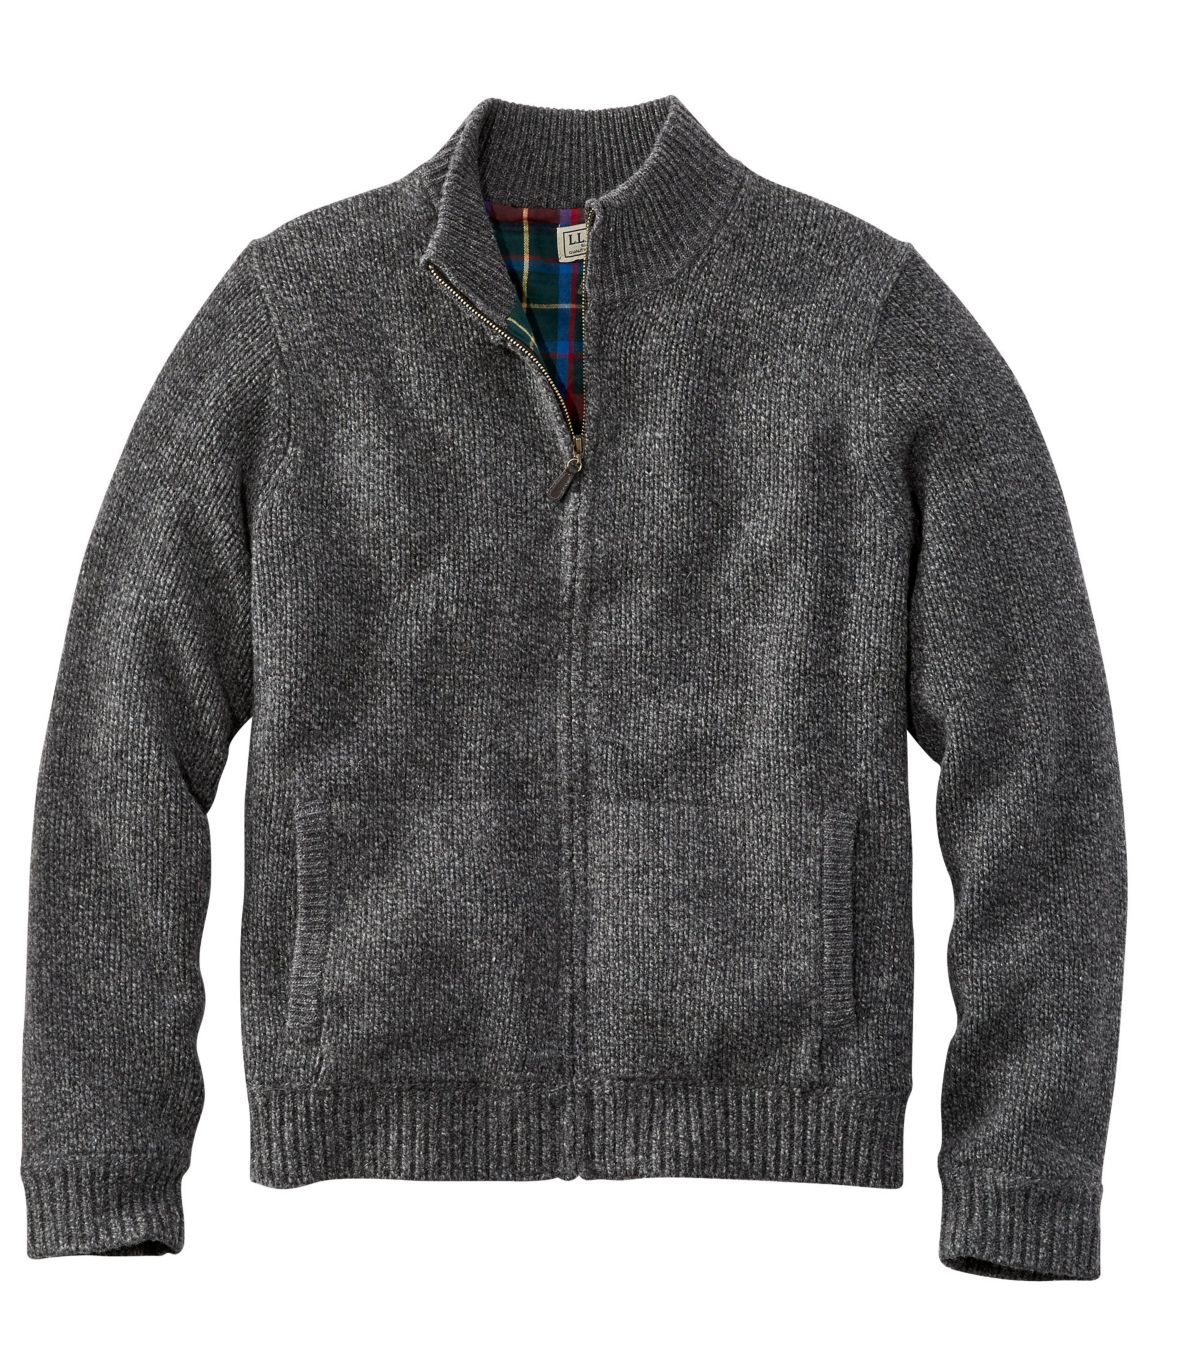 Men's L.L.Bean Classic Ragg Wool Sweater, Full-Zip Flannel-Lined at L.L ...